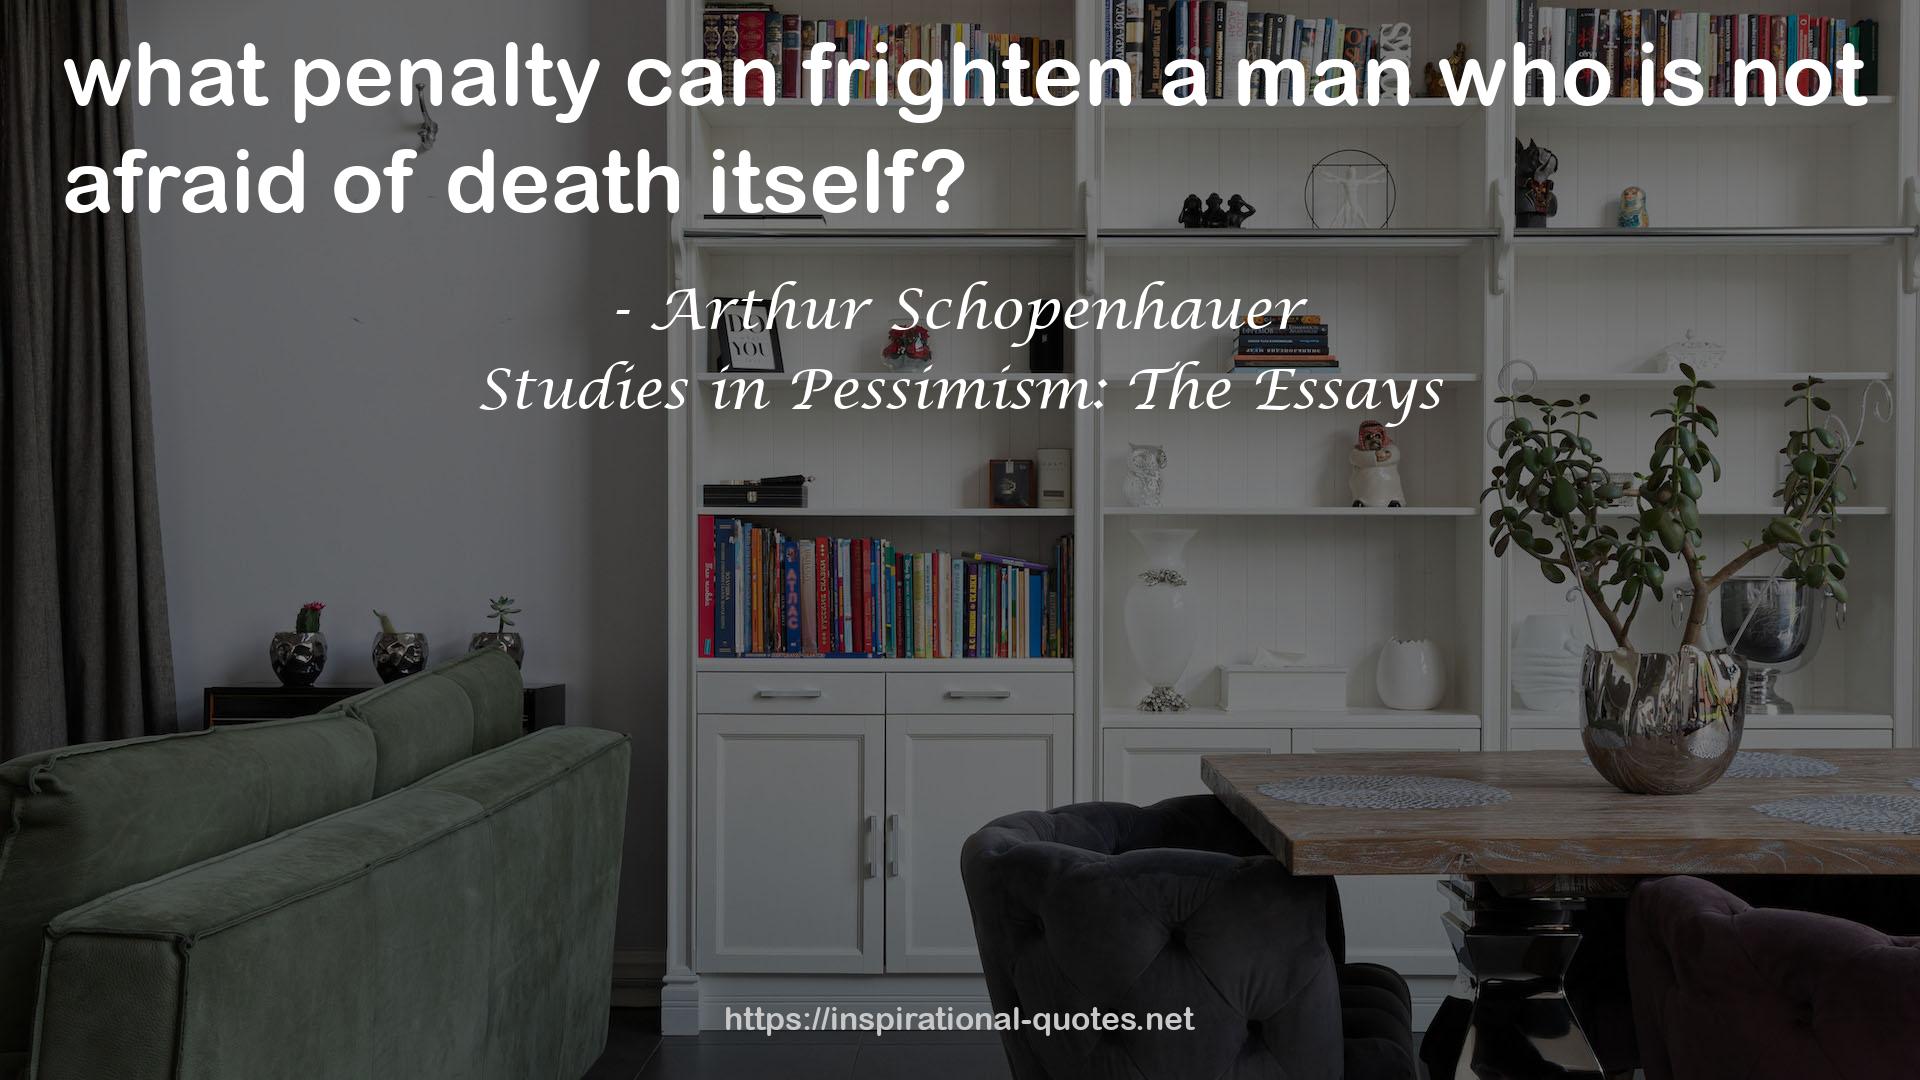 Studies in Pessimism: The Essays QUOTES